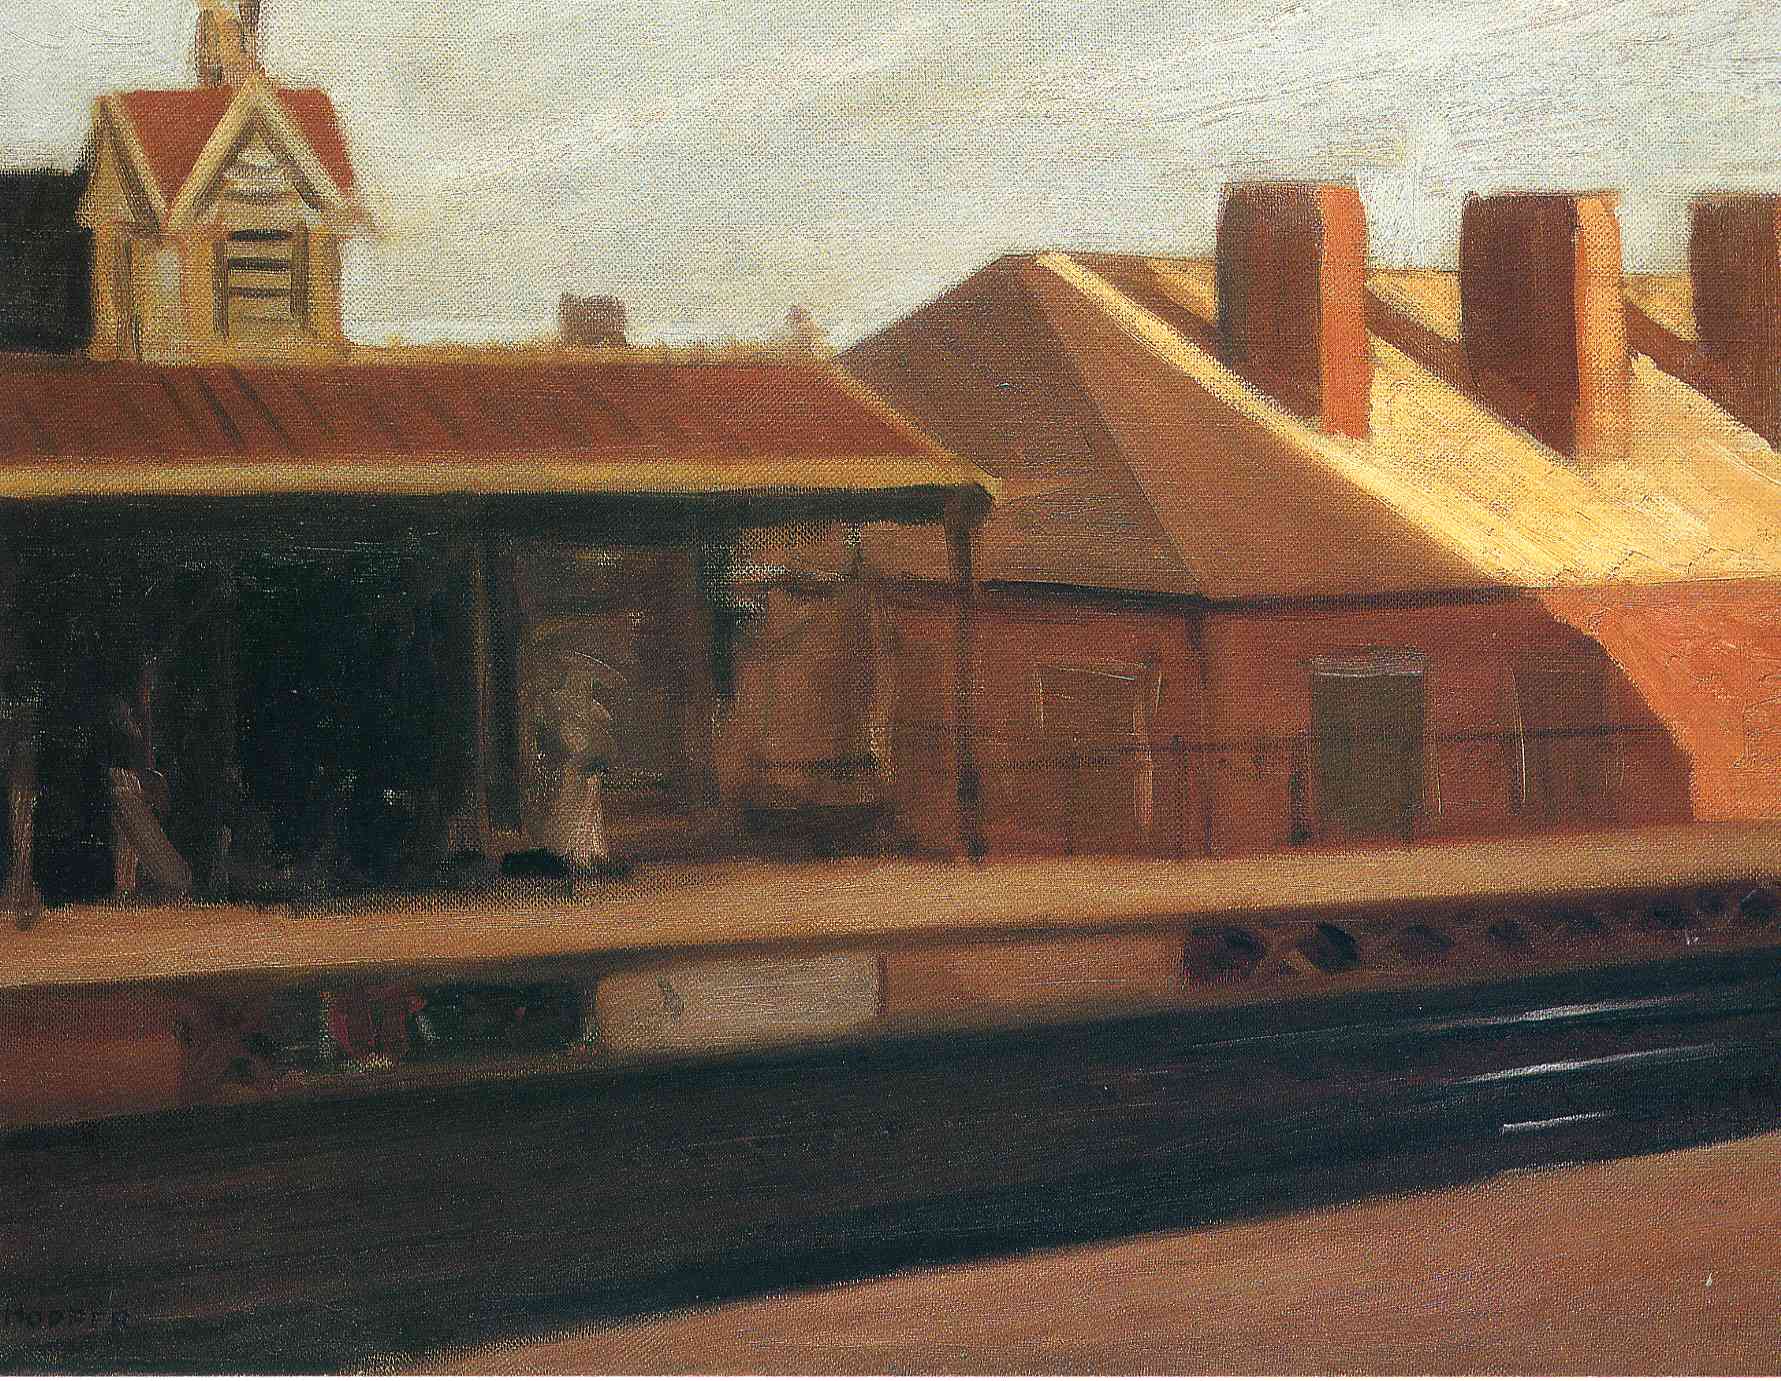 《高架列车站》爱德华·霍普作品介绍及画作含义/创作背景